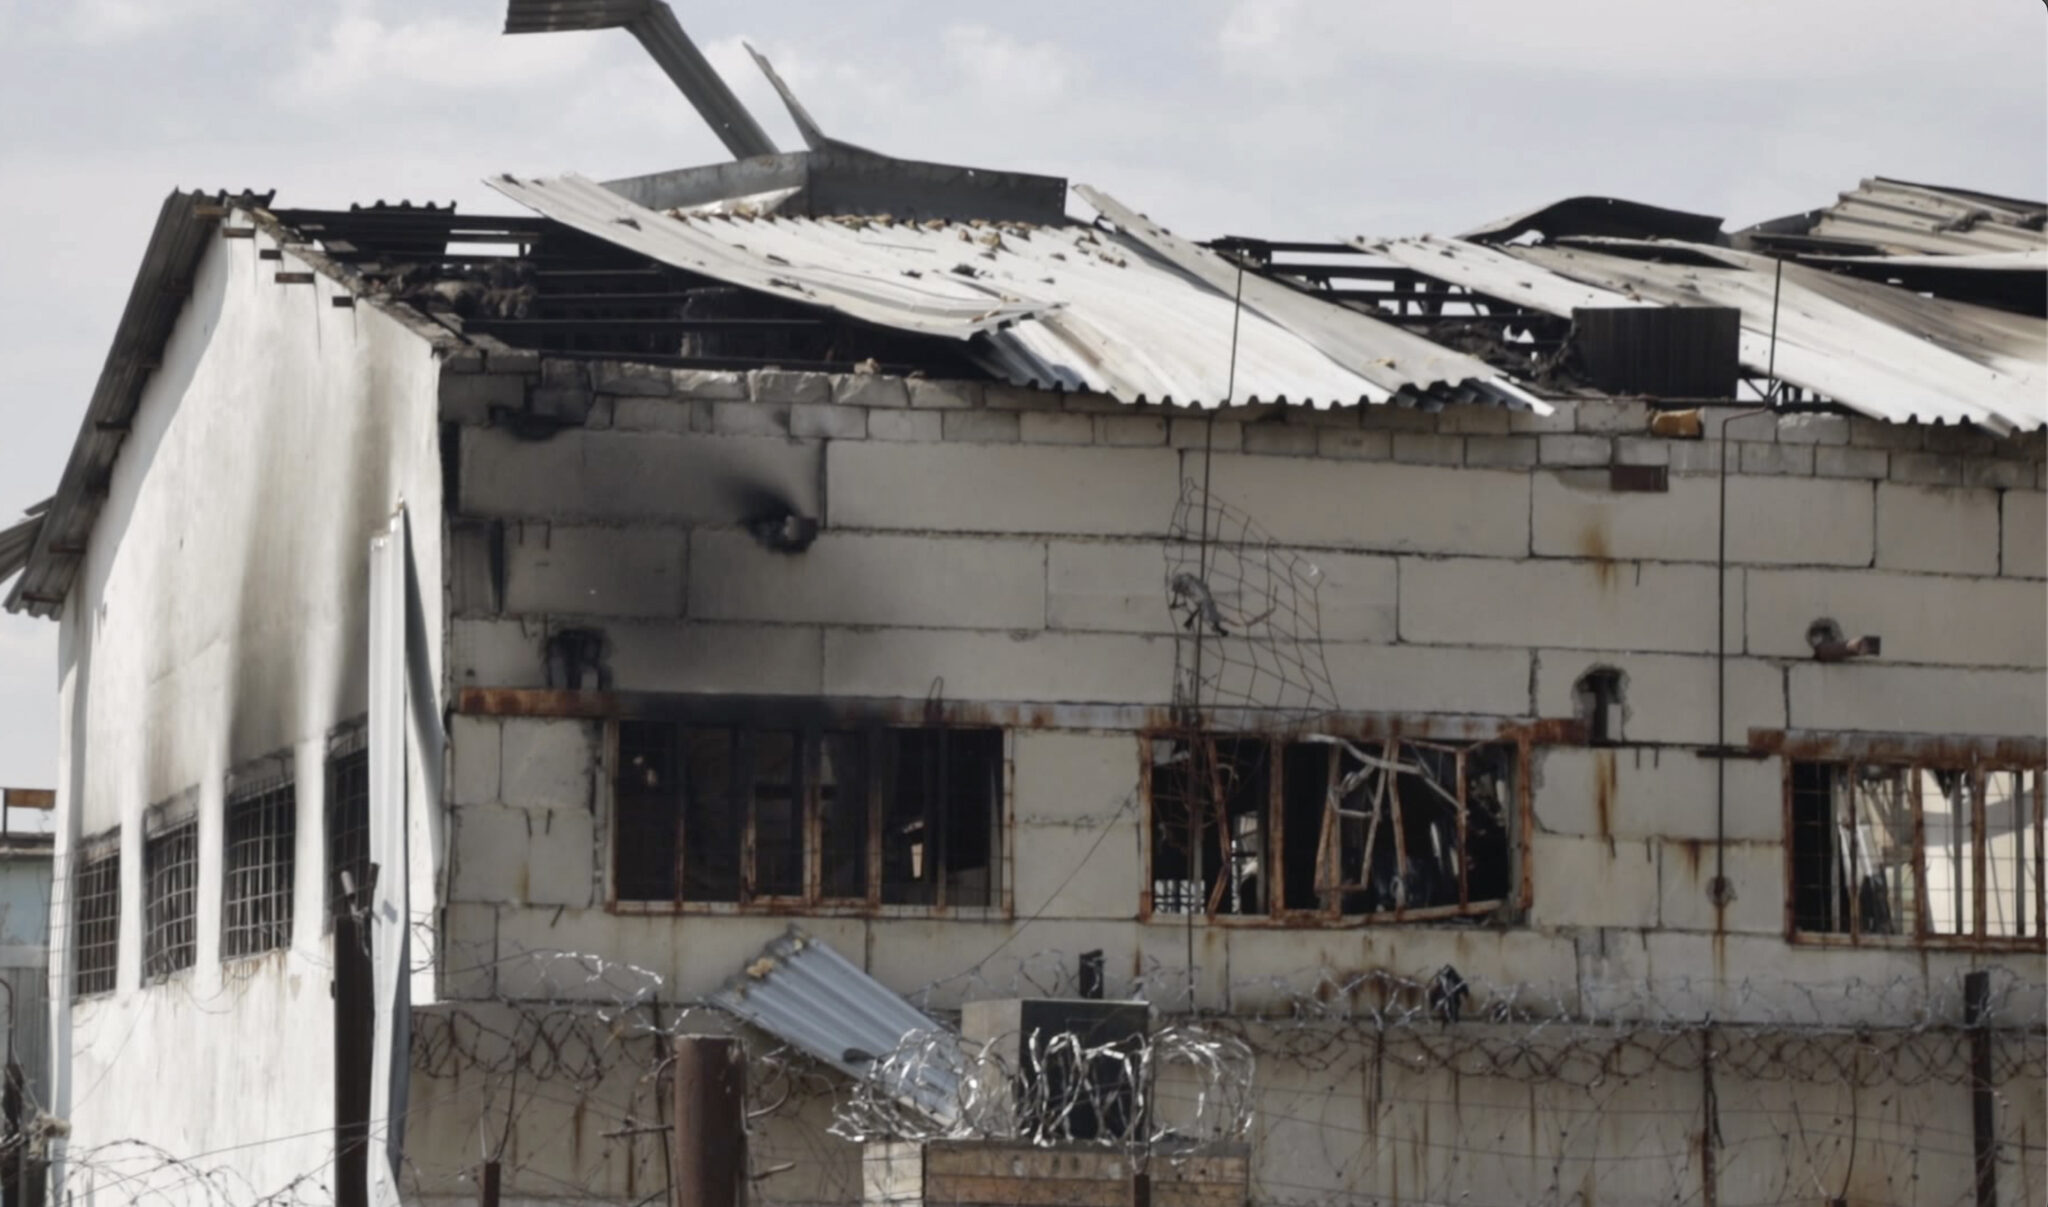 Барак на территории колонии в Еленовке, разрушенный в результате взрыва. Фото AP / Scanpix / Leta.